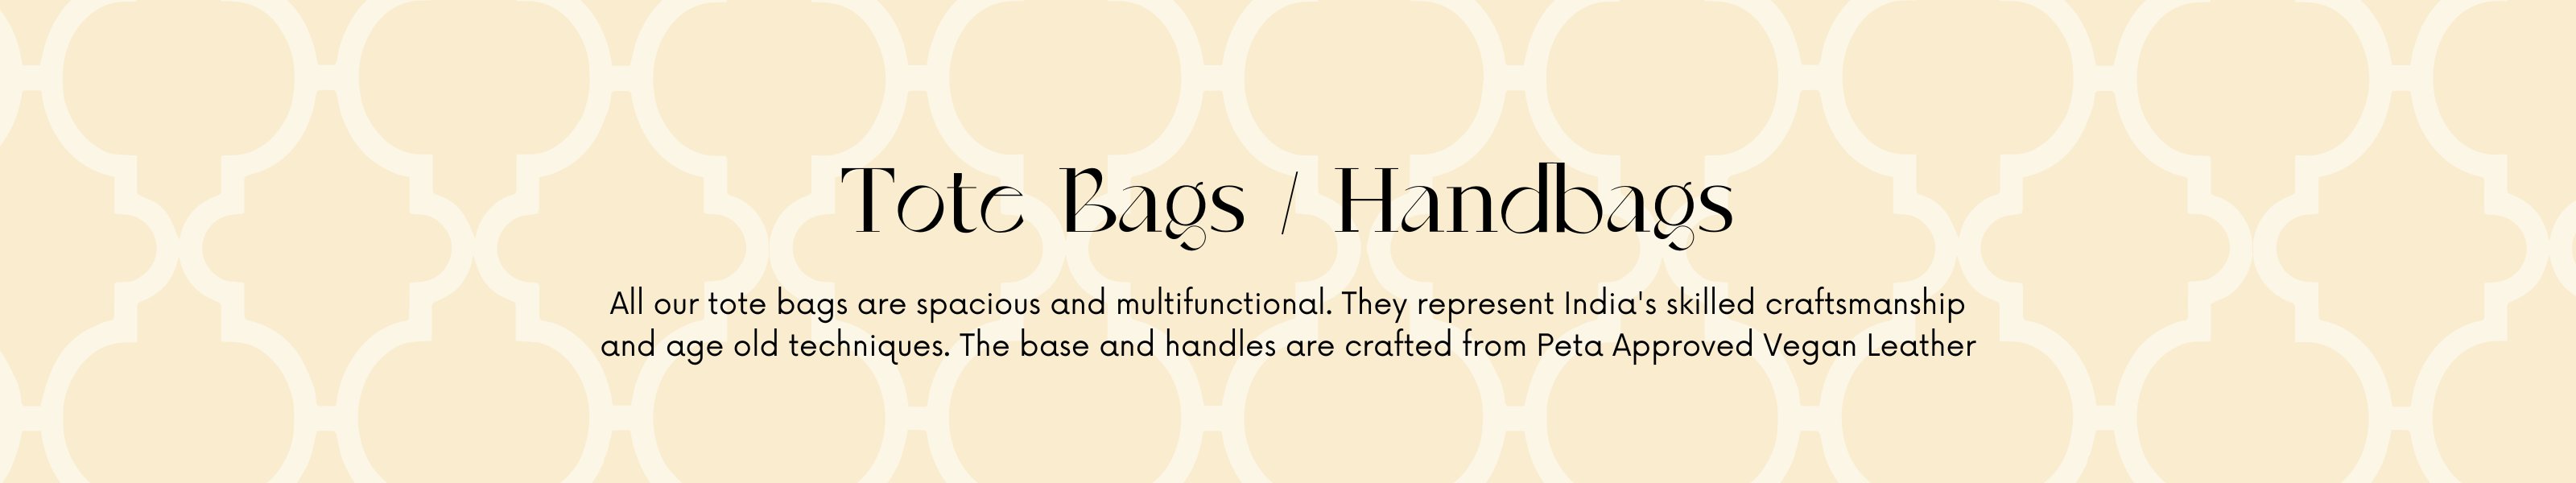 Tote Bags / Handbags